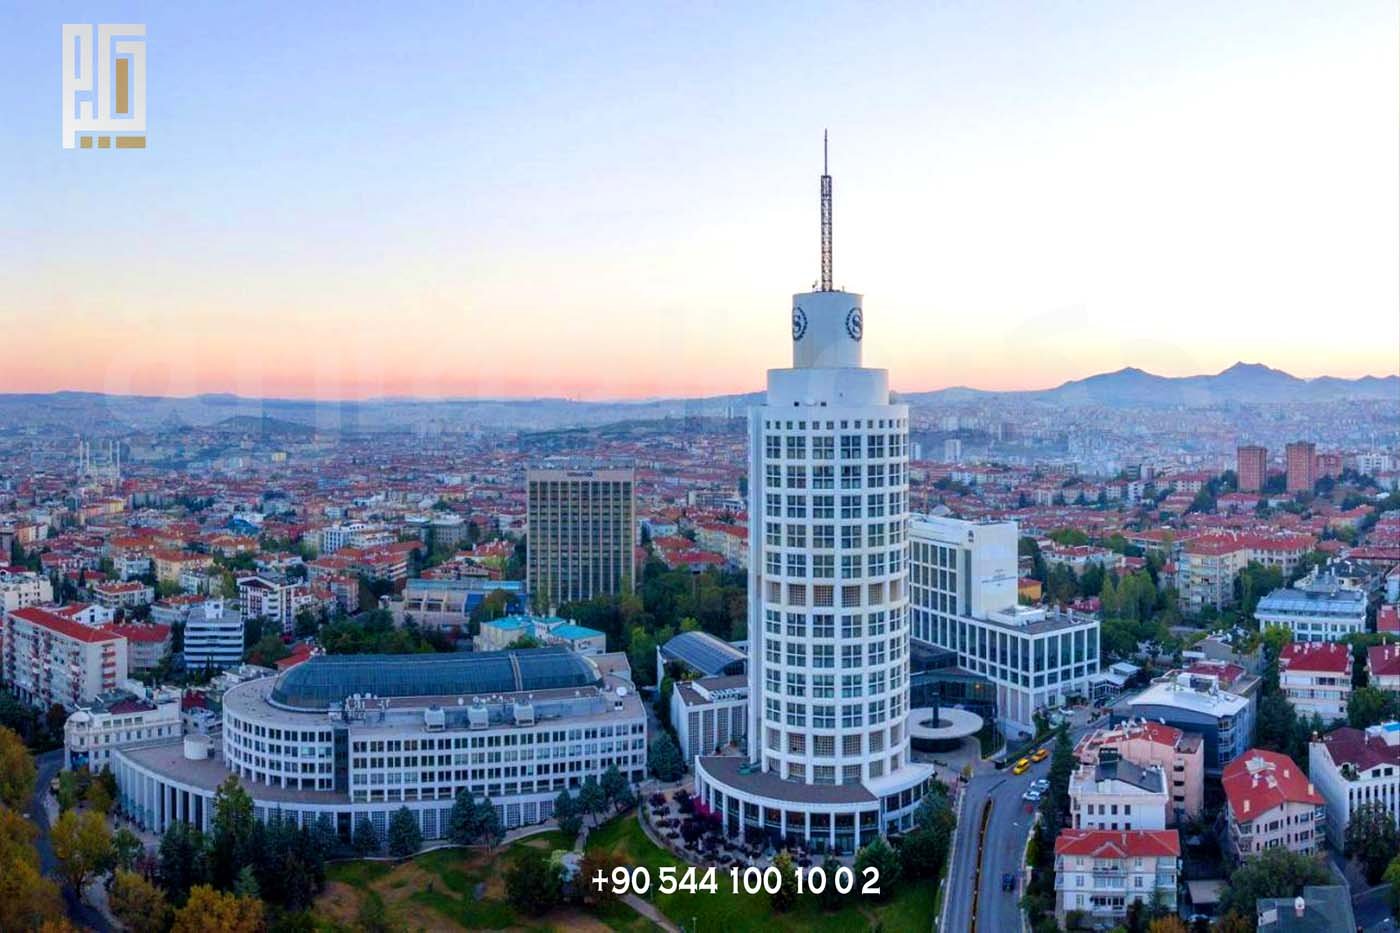 بهترین مکان برای خرید آپارتمان در ترکیه آنکارا است